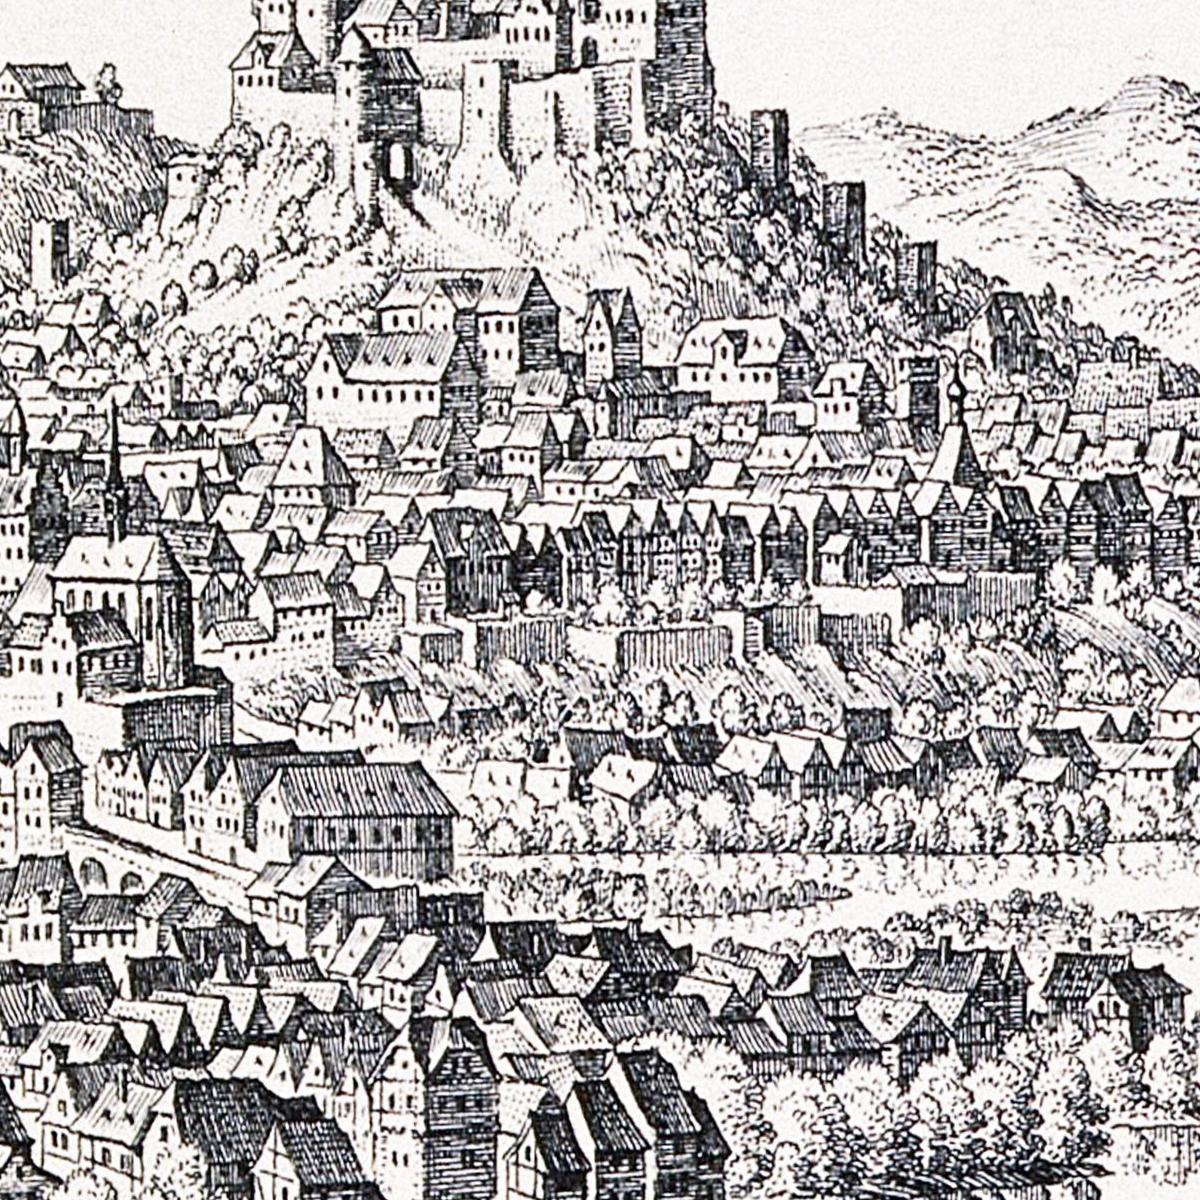 Historische Stadtansicht Marburg um 1646